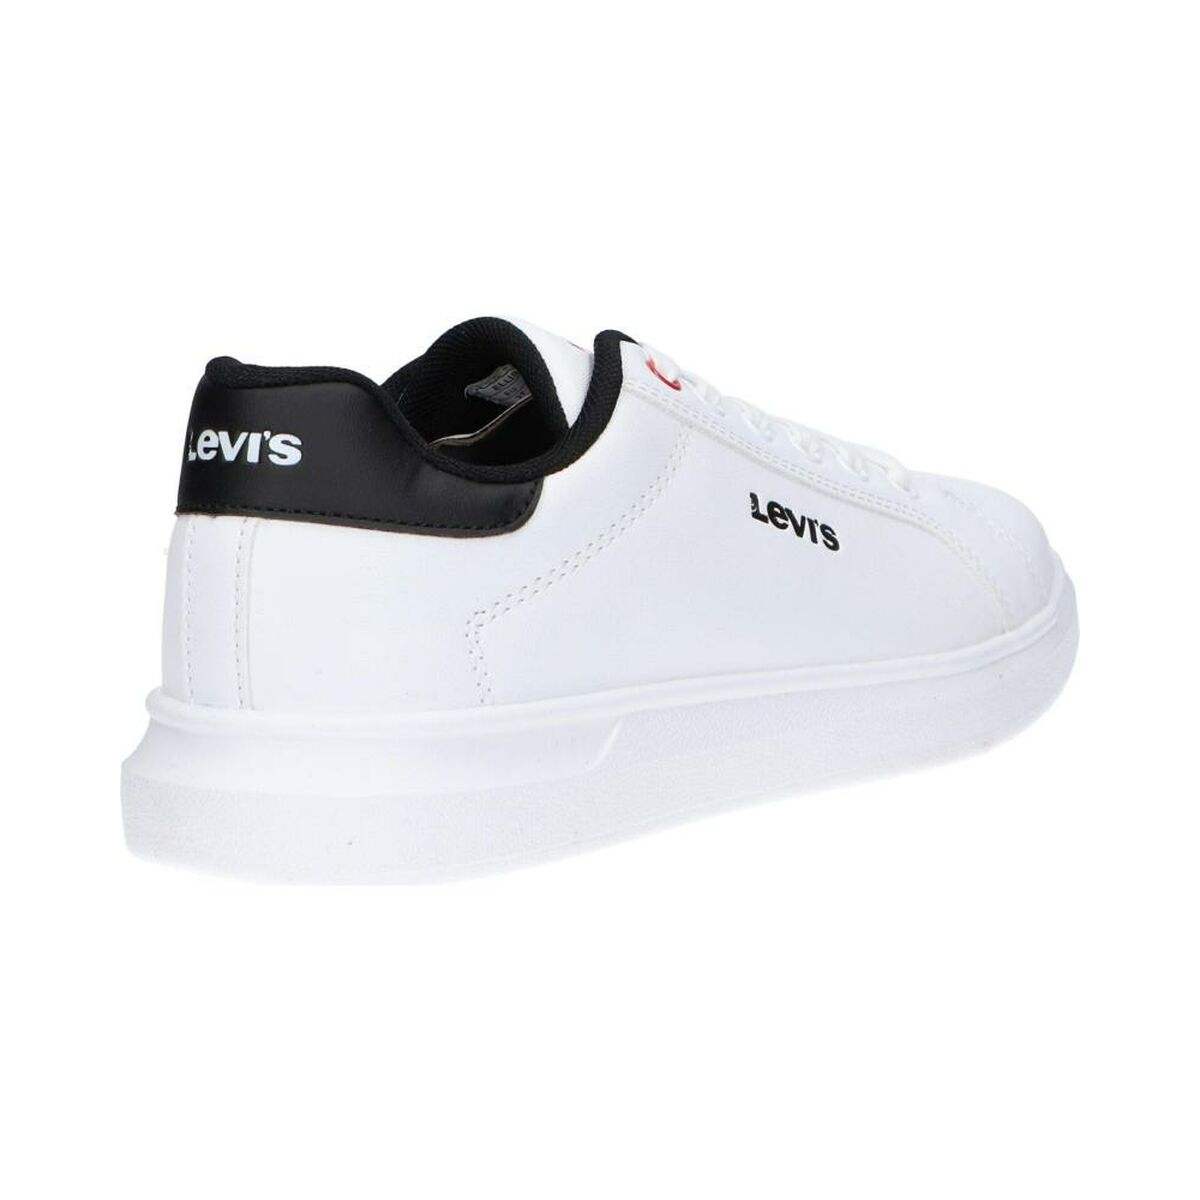 Jungen Sneaker Levi's VELL0051S 0062 Weiß